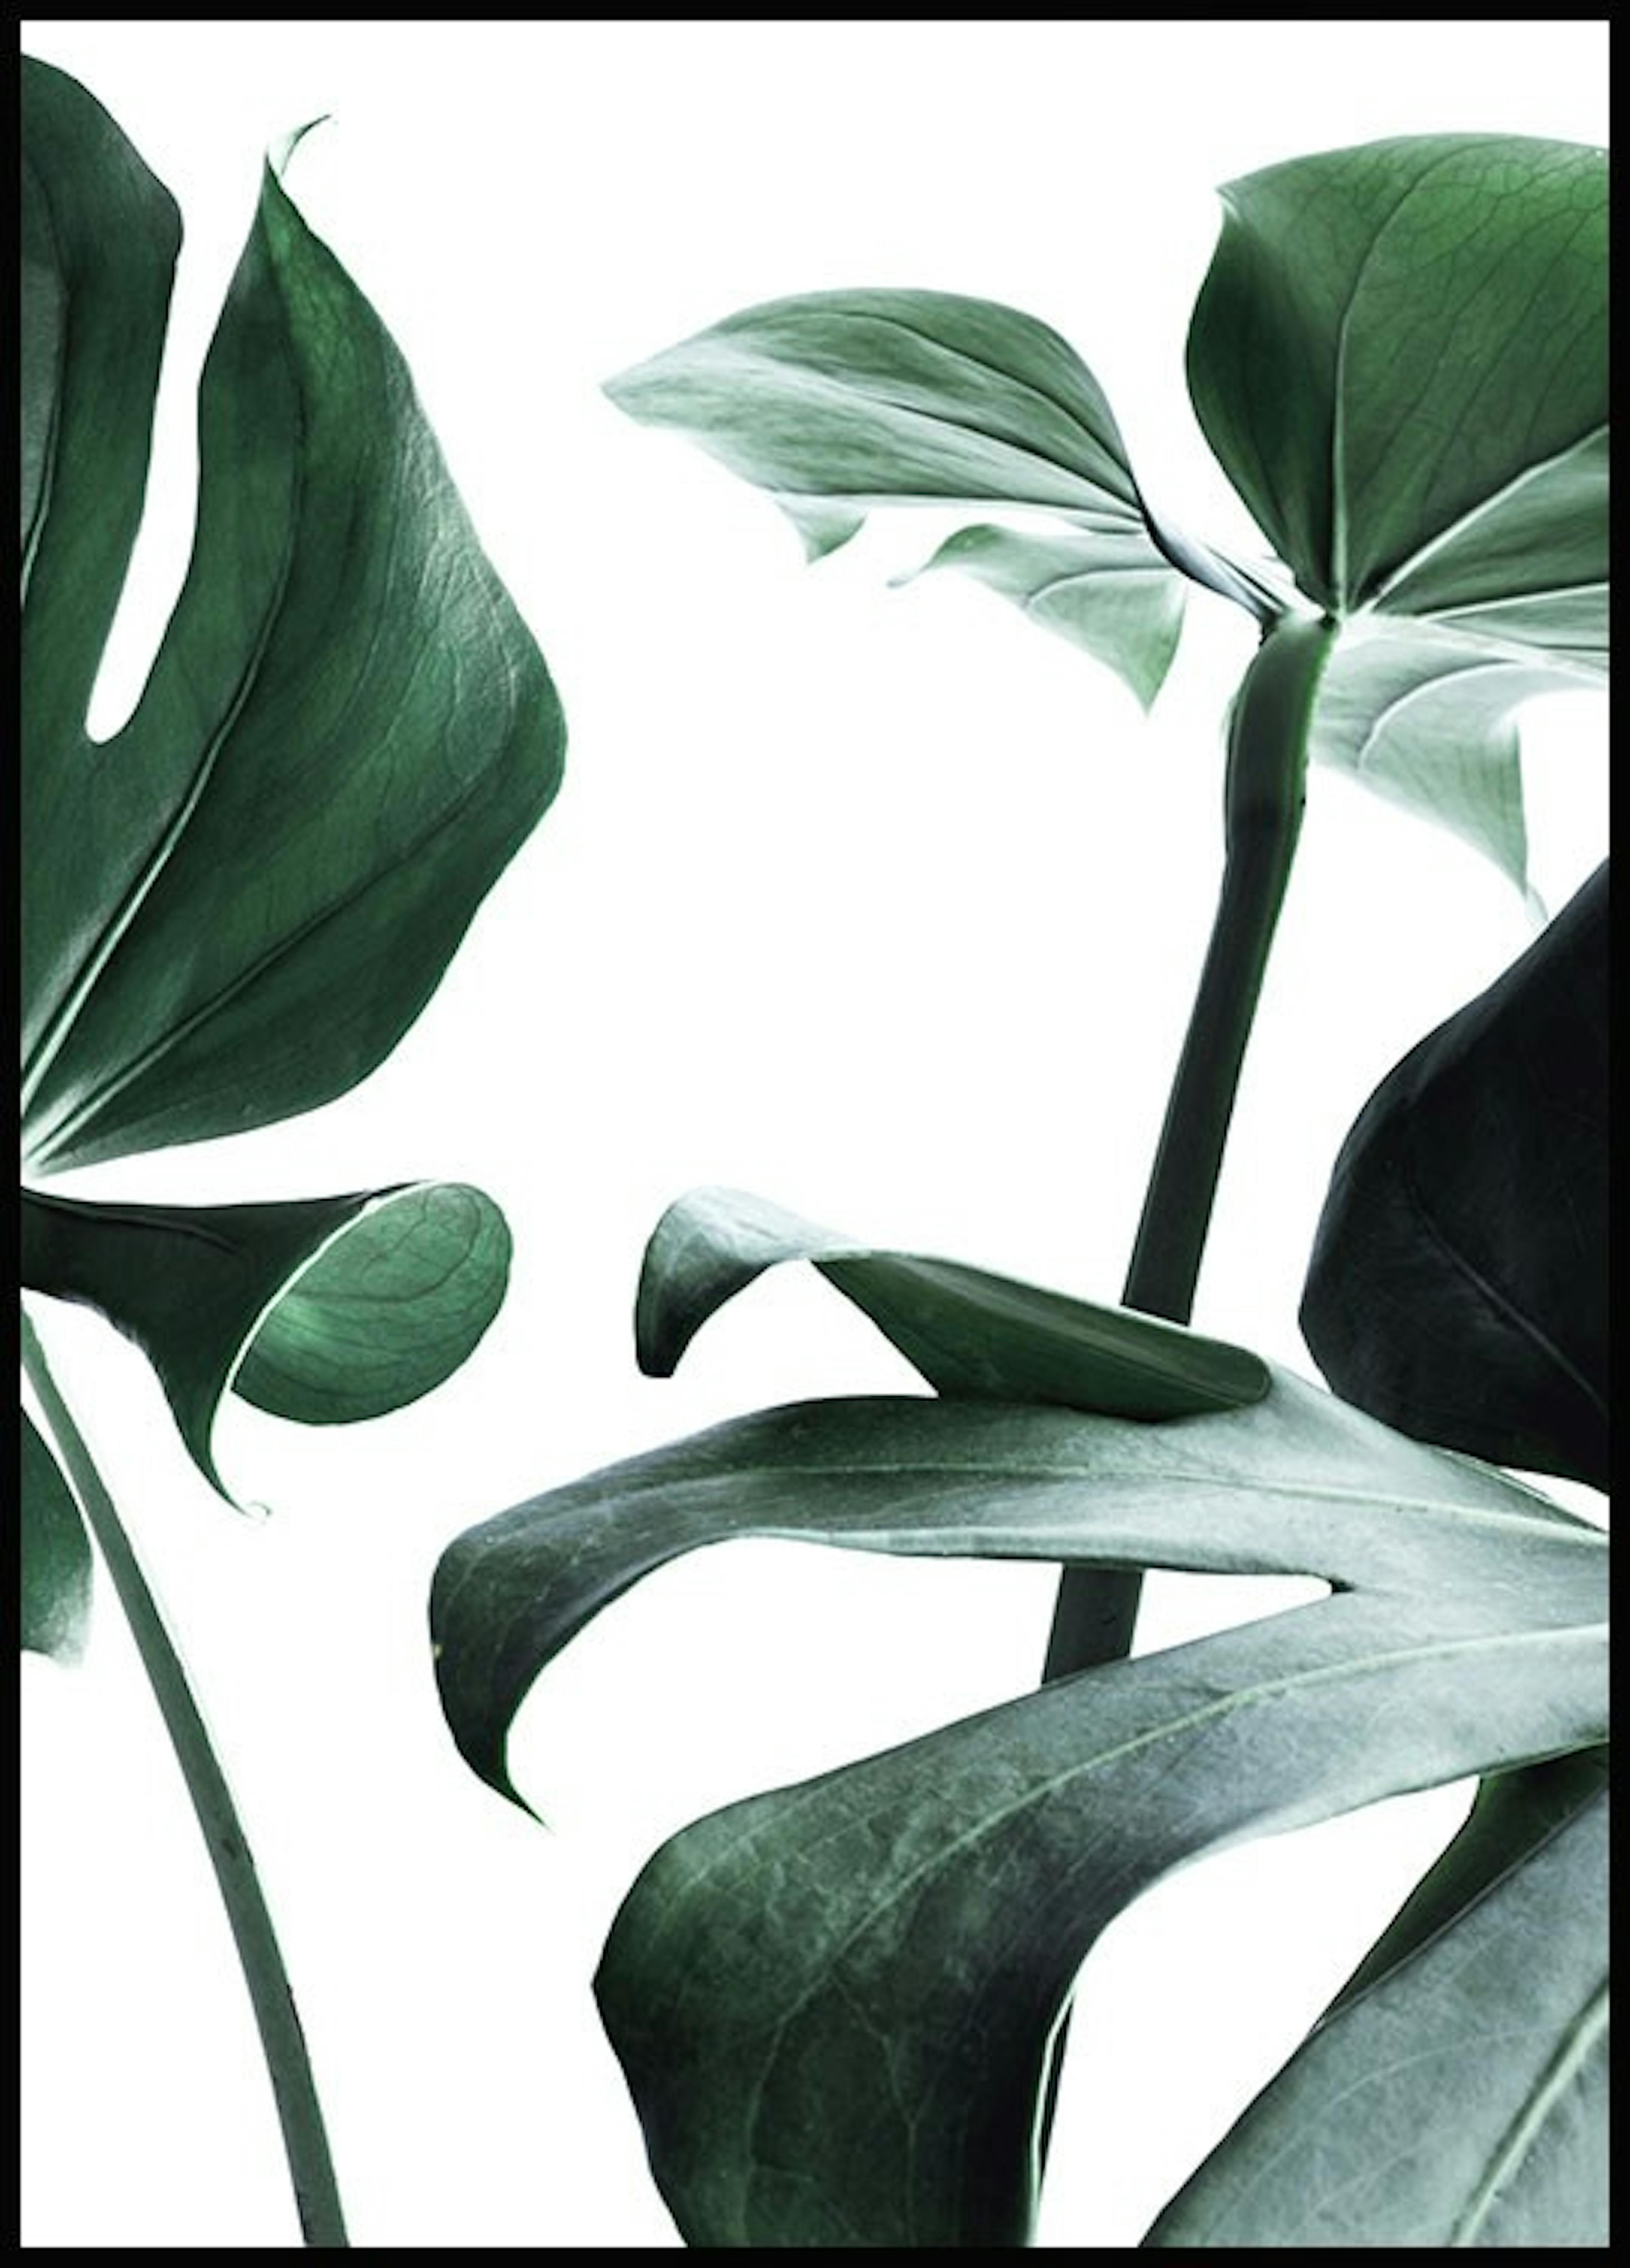 لوحة لصورة نبات قشطي 1 0